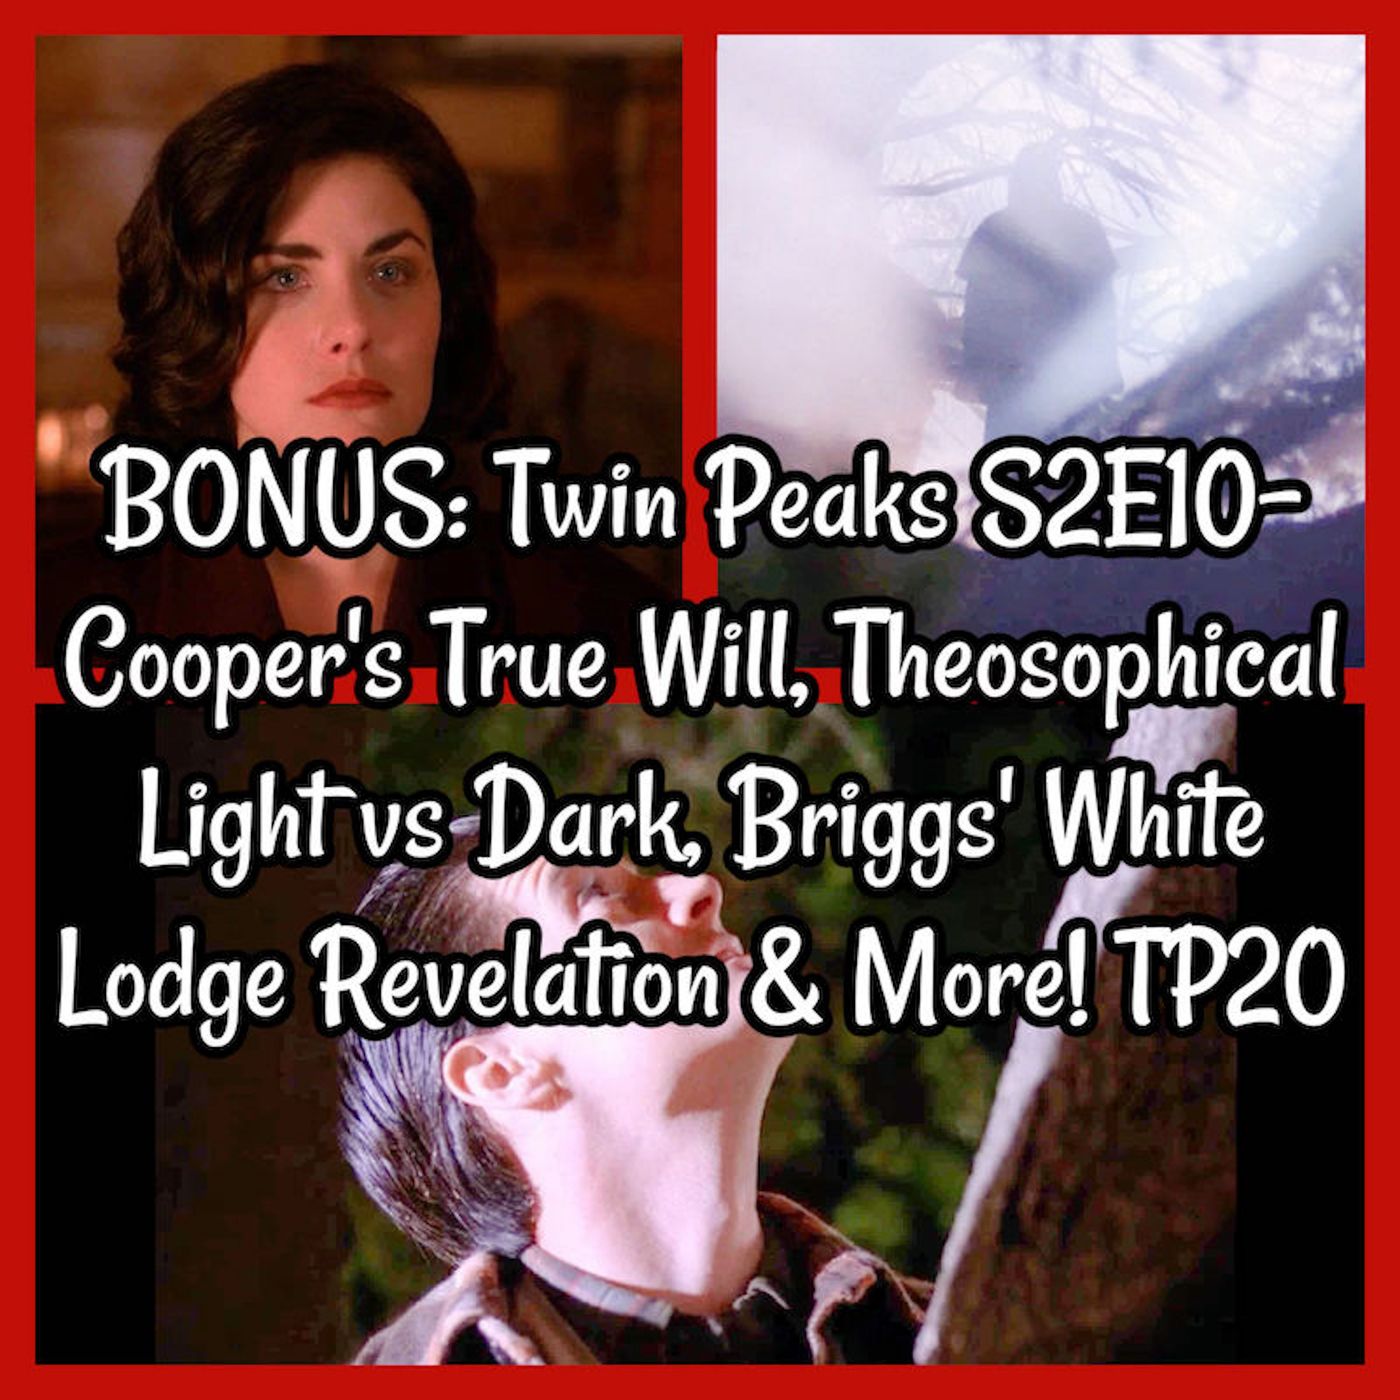 BONUS: Twin Peaks S2E10- Cooper’s True Will, Theosophical Light vs Dark, Briggs’ White Lodge Revelation & More! TP20